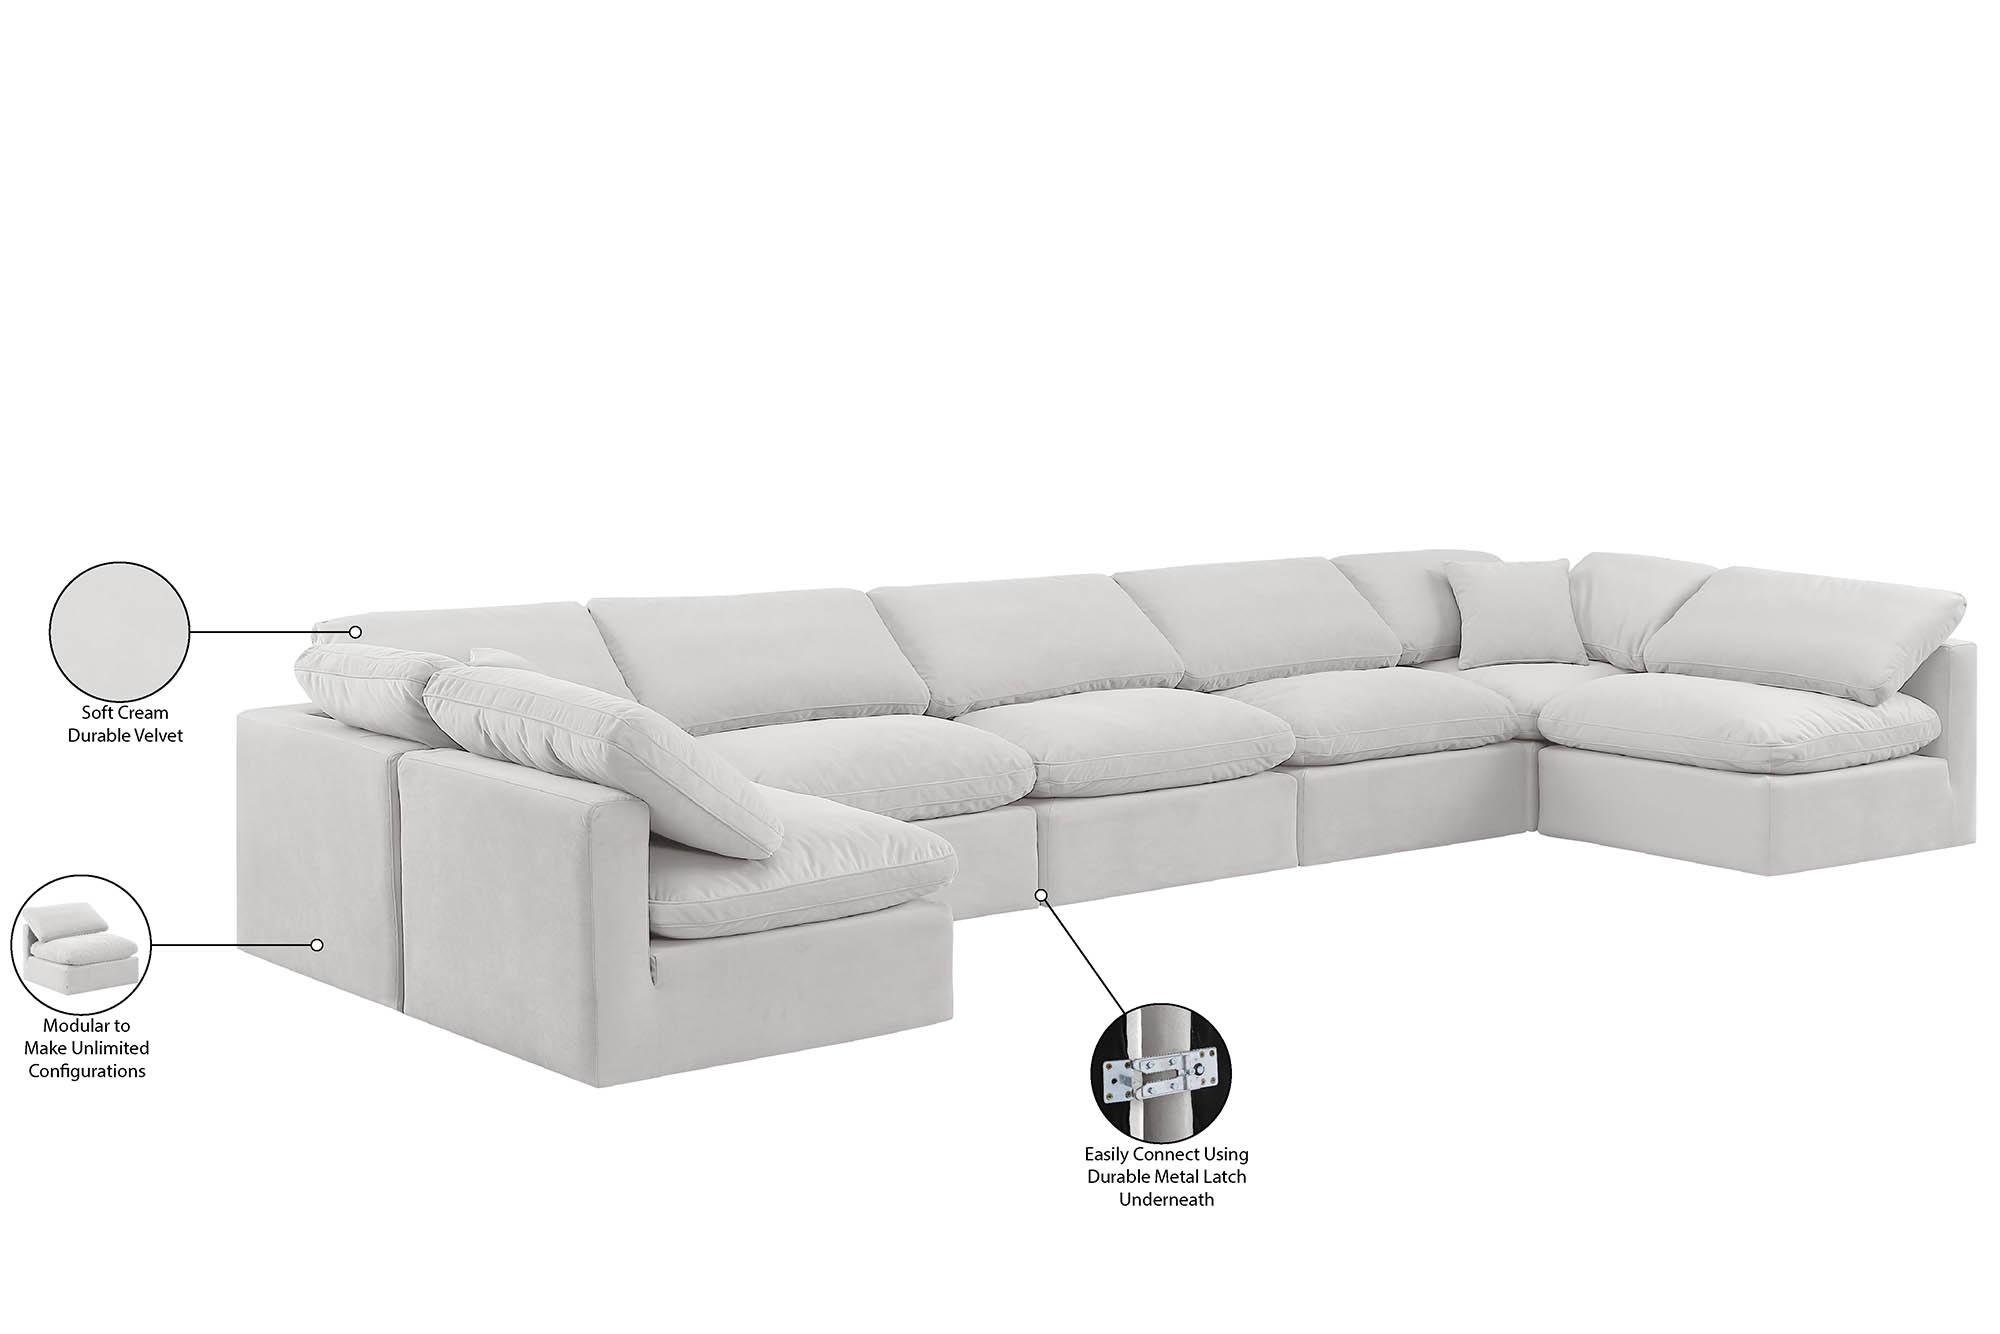 Contemporary, Modern Modular Sectional Sofa INDULGE 147Cream-Sec7B 147Cream-Sec7B in Cream Velvet